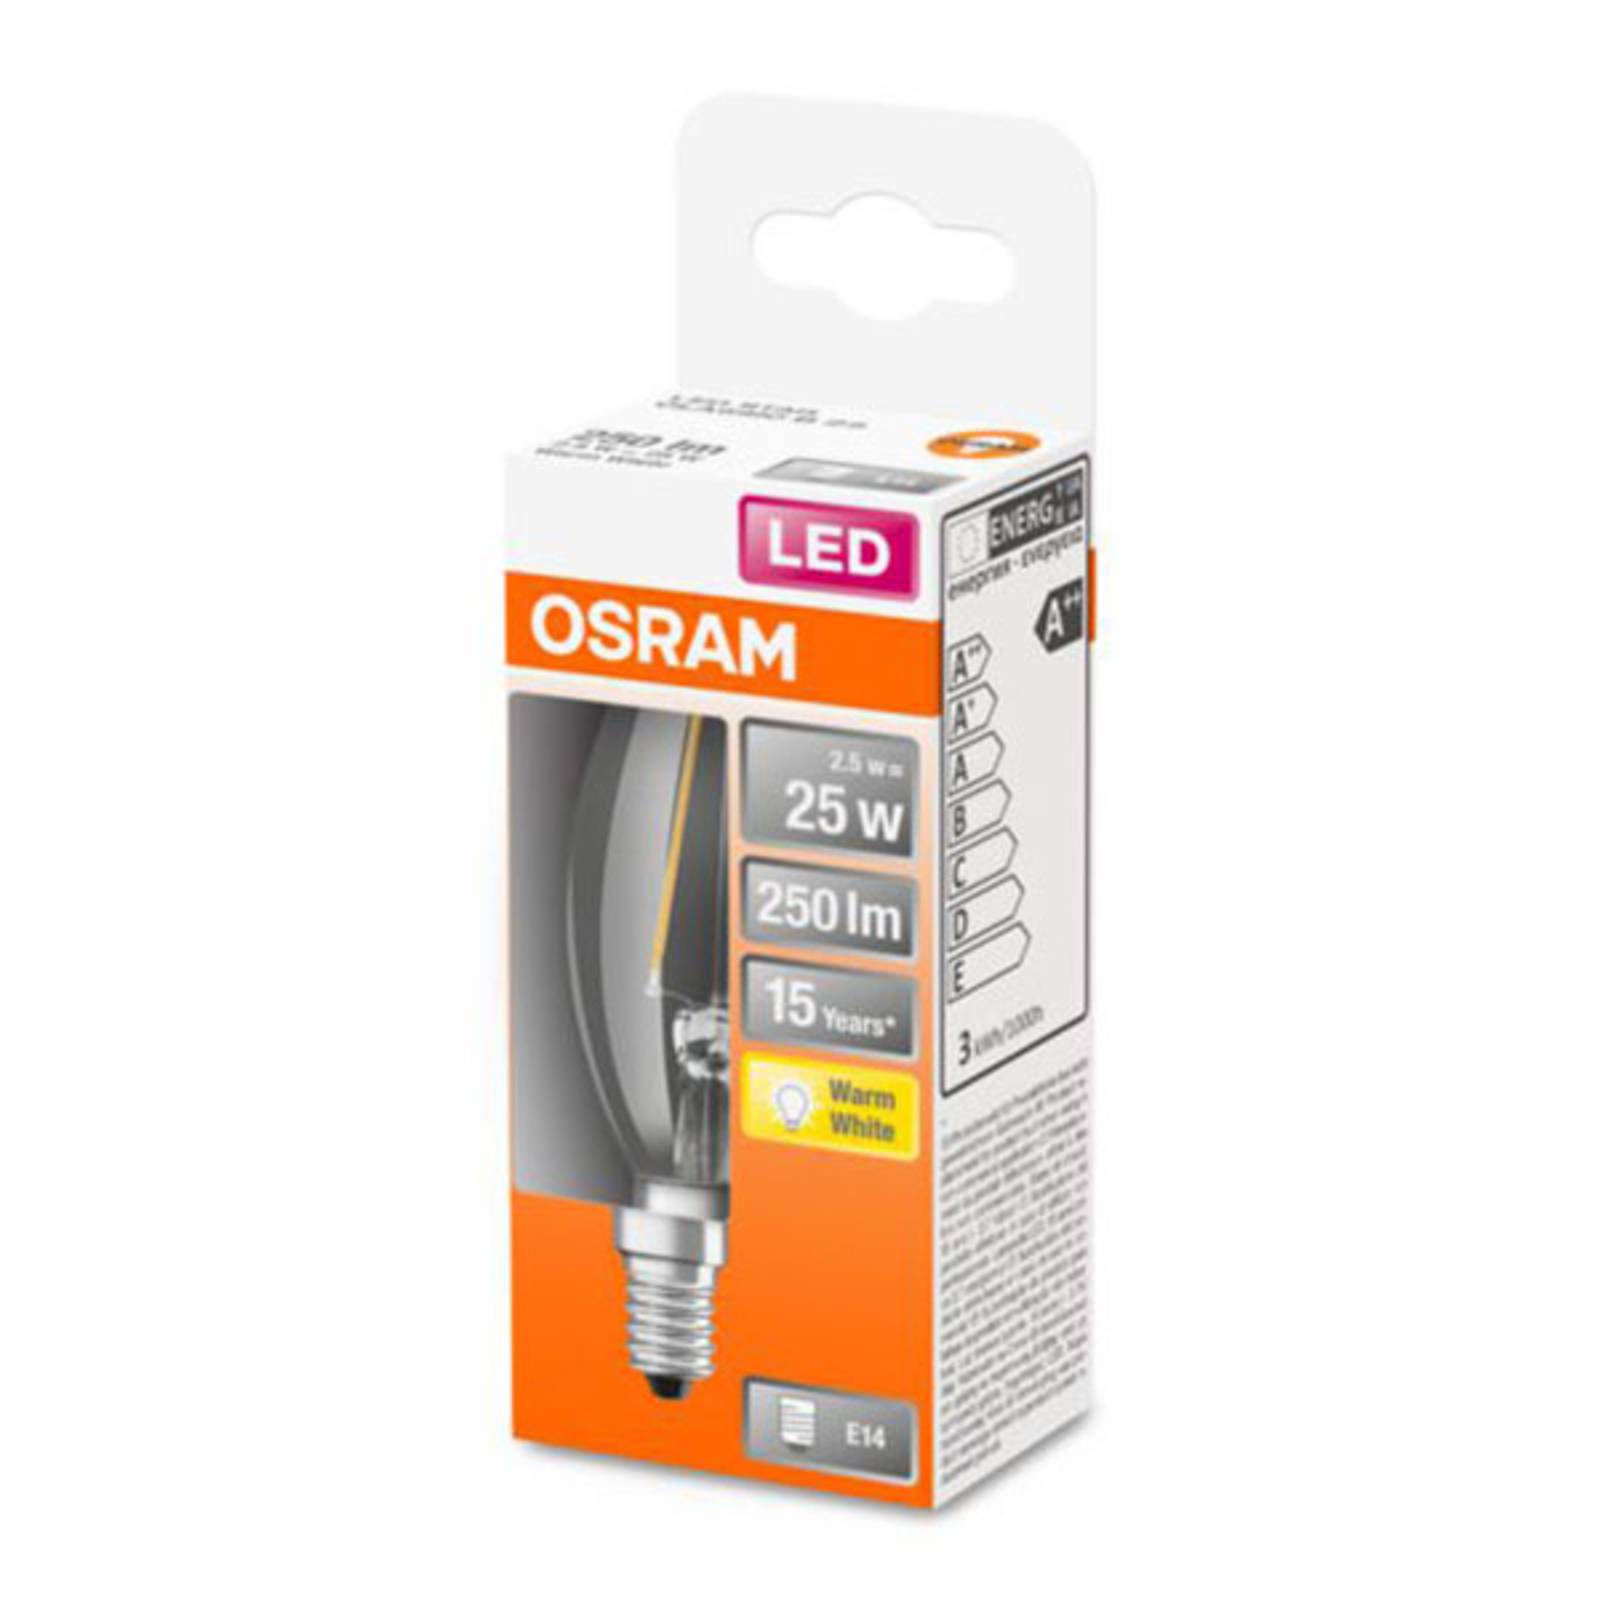 OSRAM Classic B LED lámpa E14 2,5W 2700K átlátszó